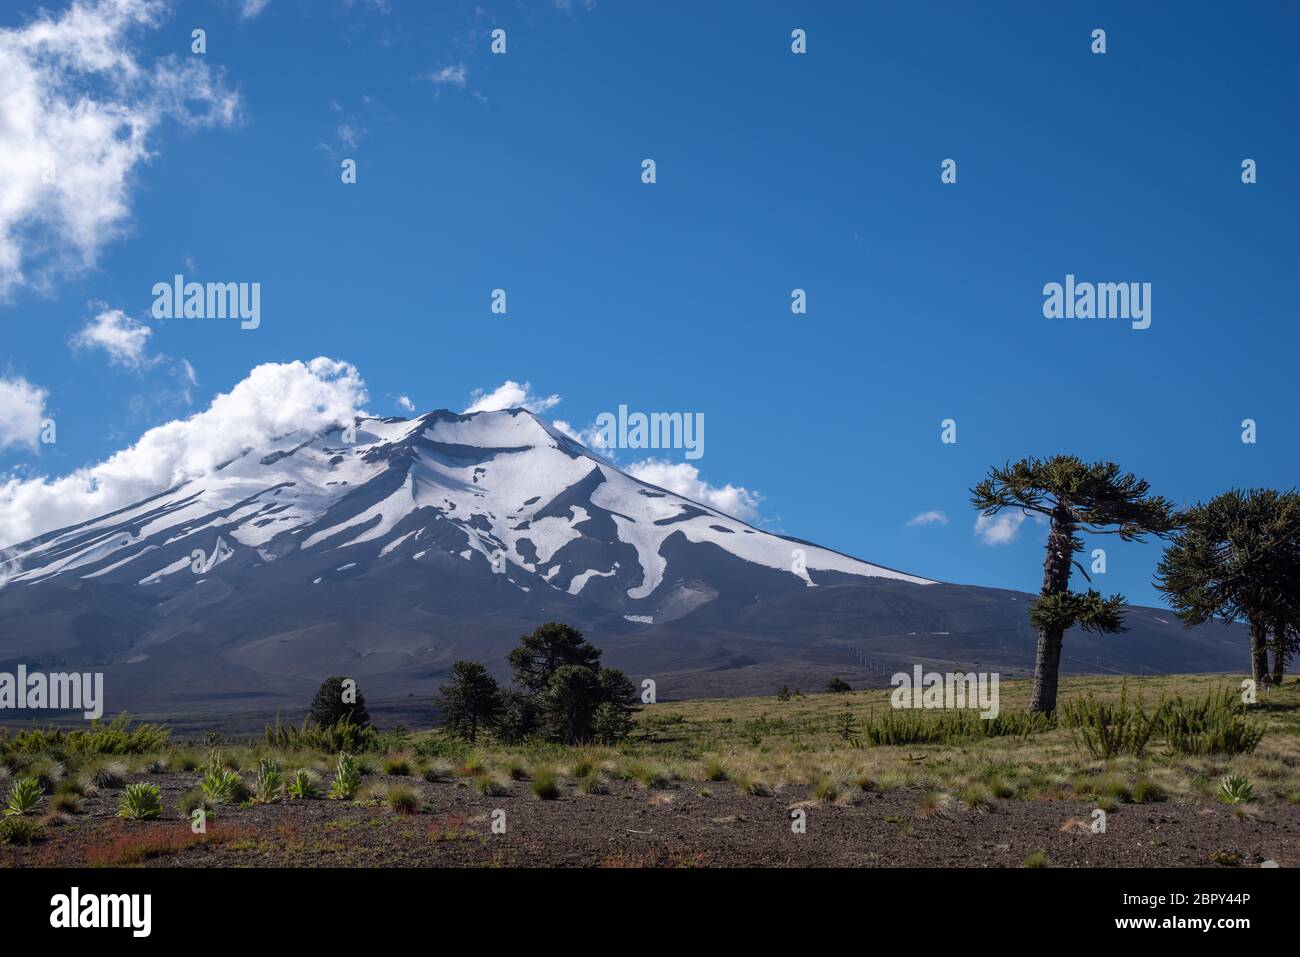 Der Vulkan Lanquimay (Chile) mit den berühmtesten Bäumen Chiles, den Araukarien. Die Aufnahme entstand im Februar 2019. Stockfoto